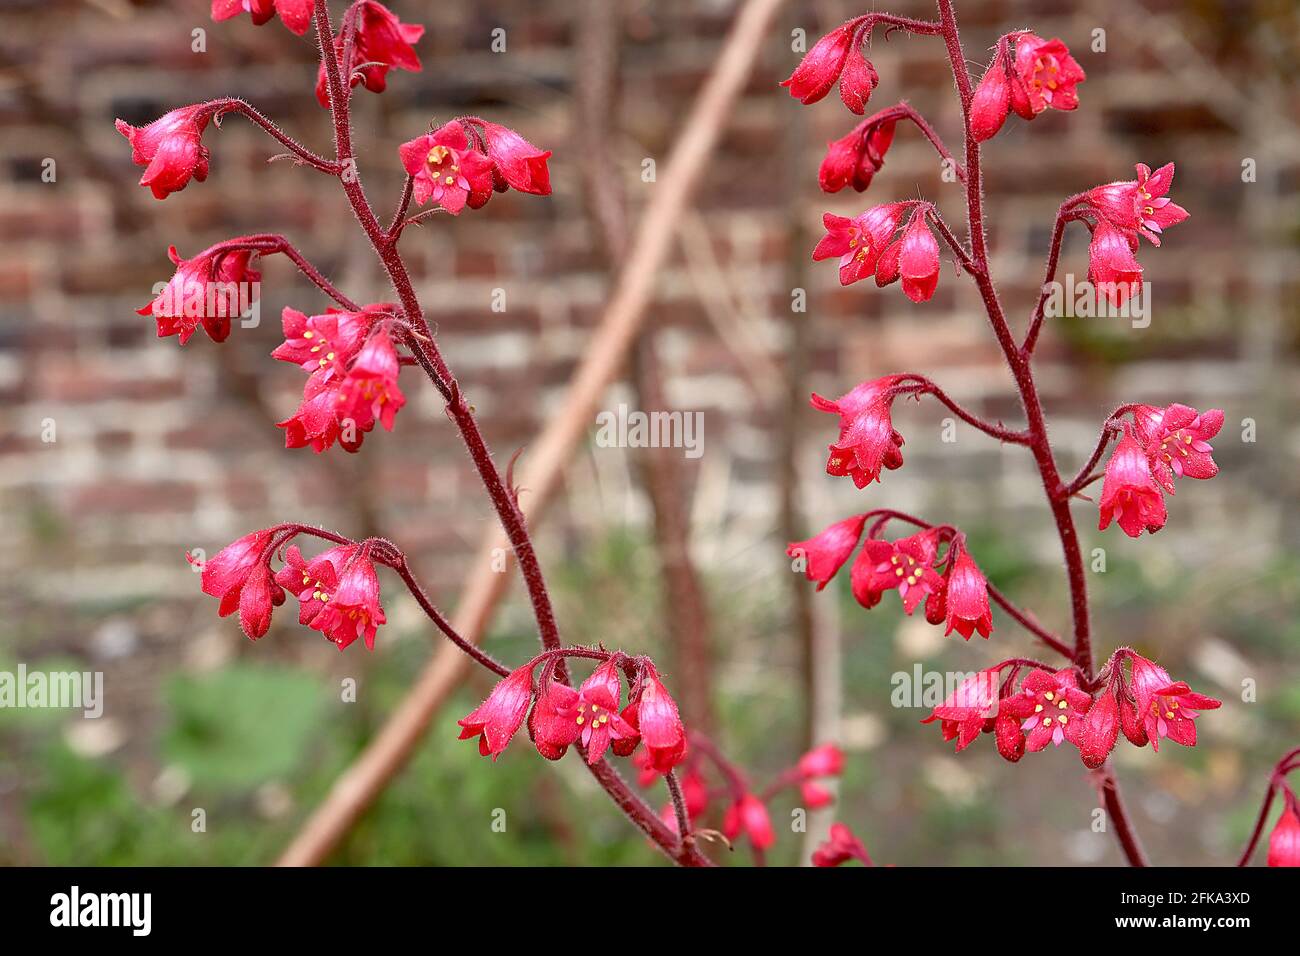 Heuchera 'París' raíz de alumbre / campanas de coral París – flores tubulares pequeñas sobre tallos rojos vellosos, abril, Inglaterra, Reino Unido Foto de stock